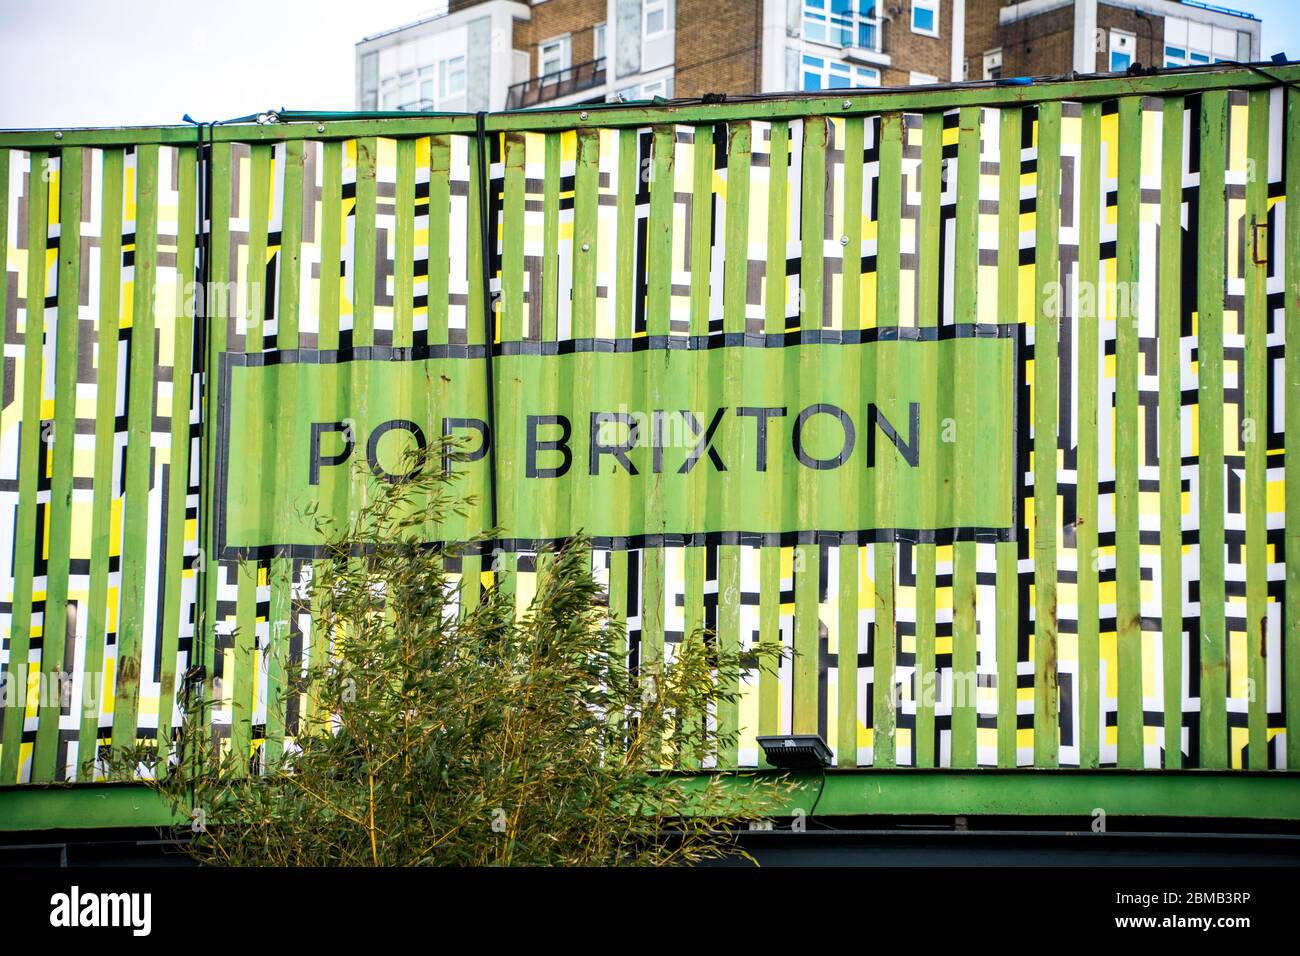 LONDRES-: Pop Brixton- un lugar de comida callejera, bar y vida nocturna hecho de contenedores de transporte reutilizados en Brixton, al suroeste de Londres. Foto de stock